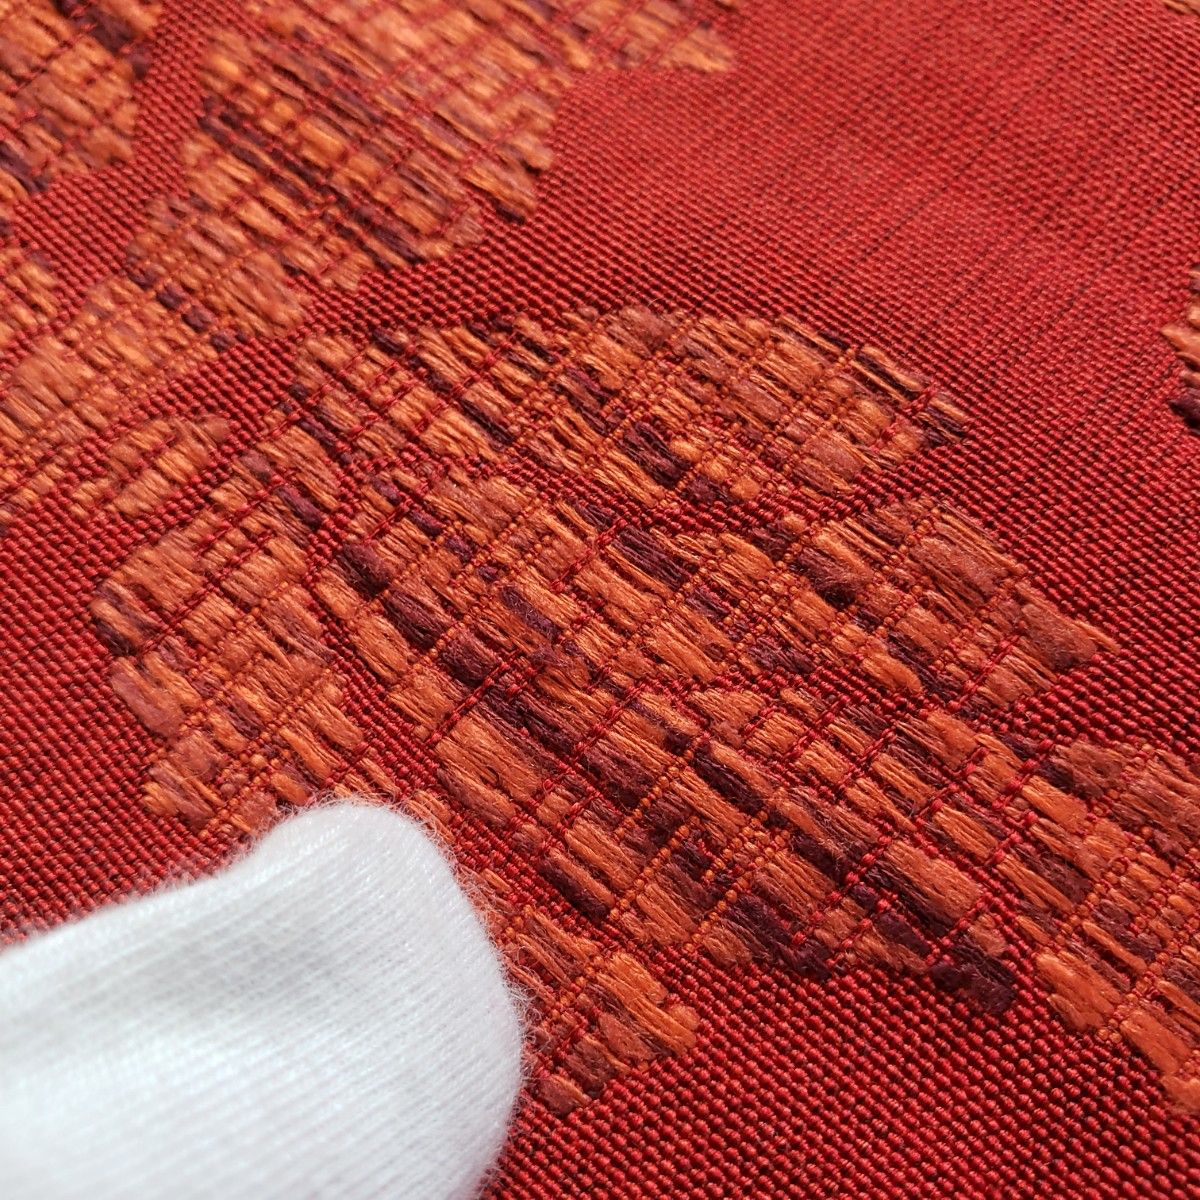 名古屋帯 正絹 着物  帯 赤 刺繍  松葉仕立て オリエンタル モダン アート カジュアル 普段着